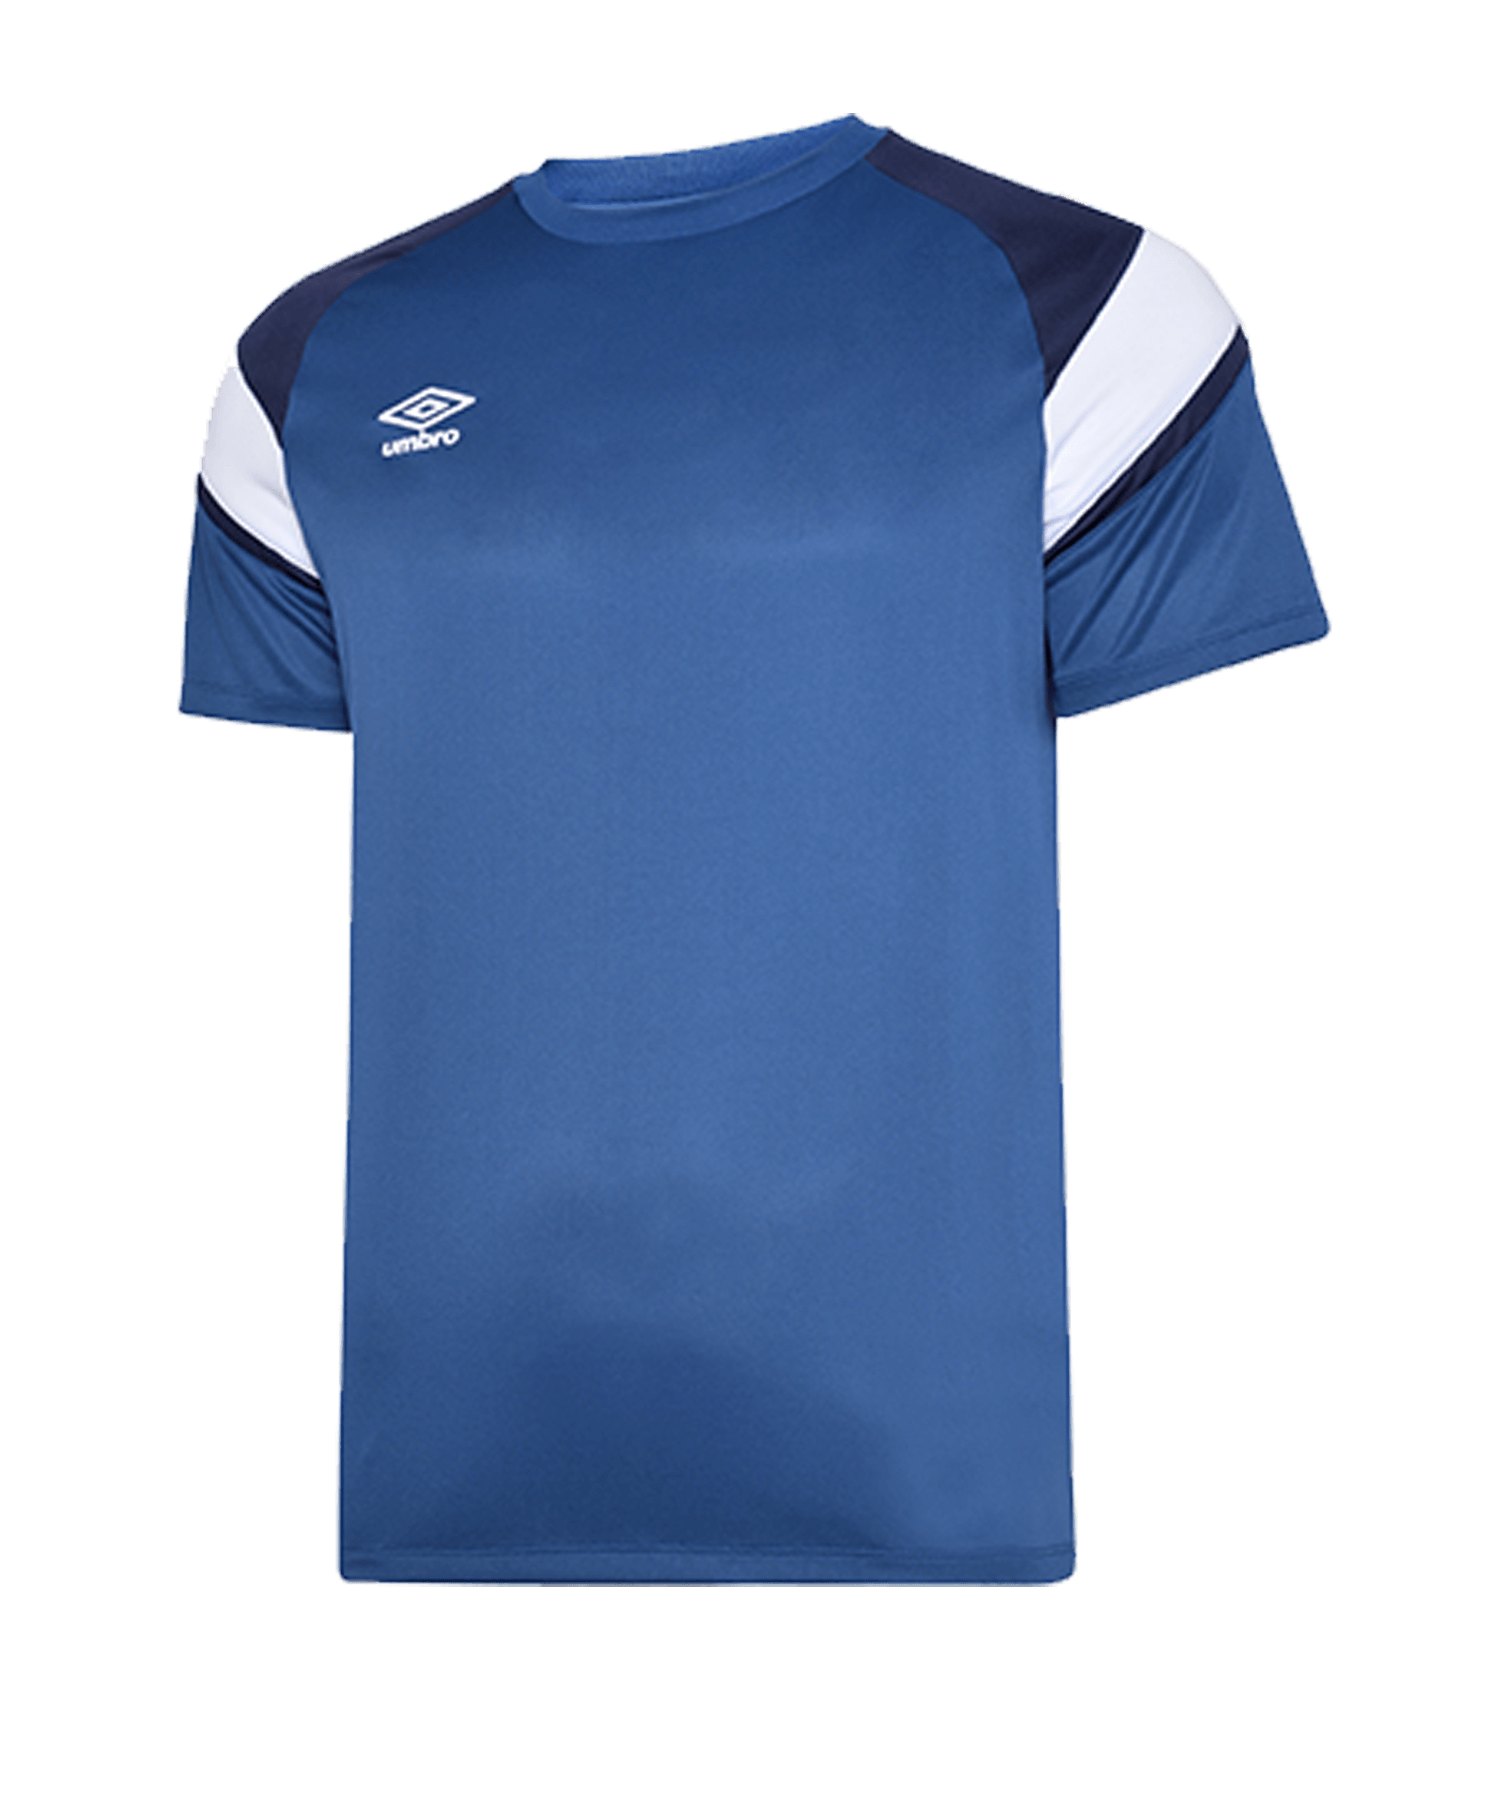 Umbro Training Jersey Trikot Blau FGRG - blau